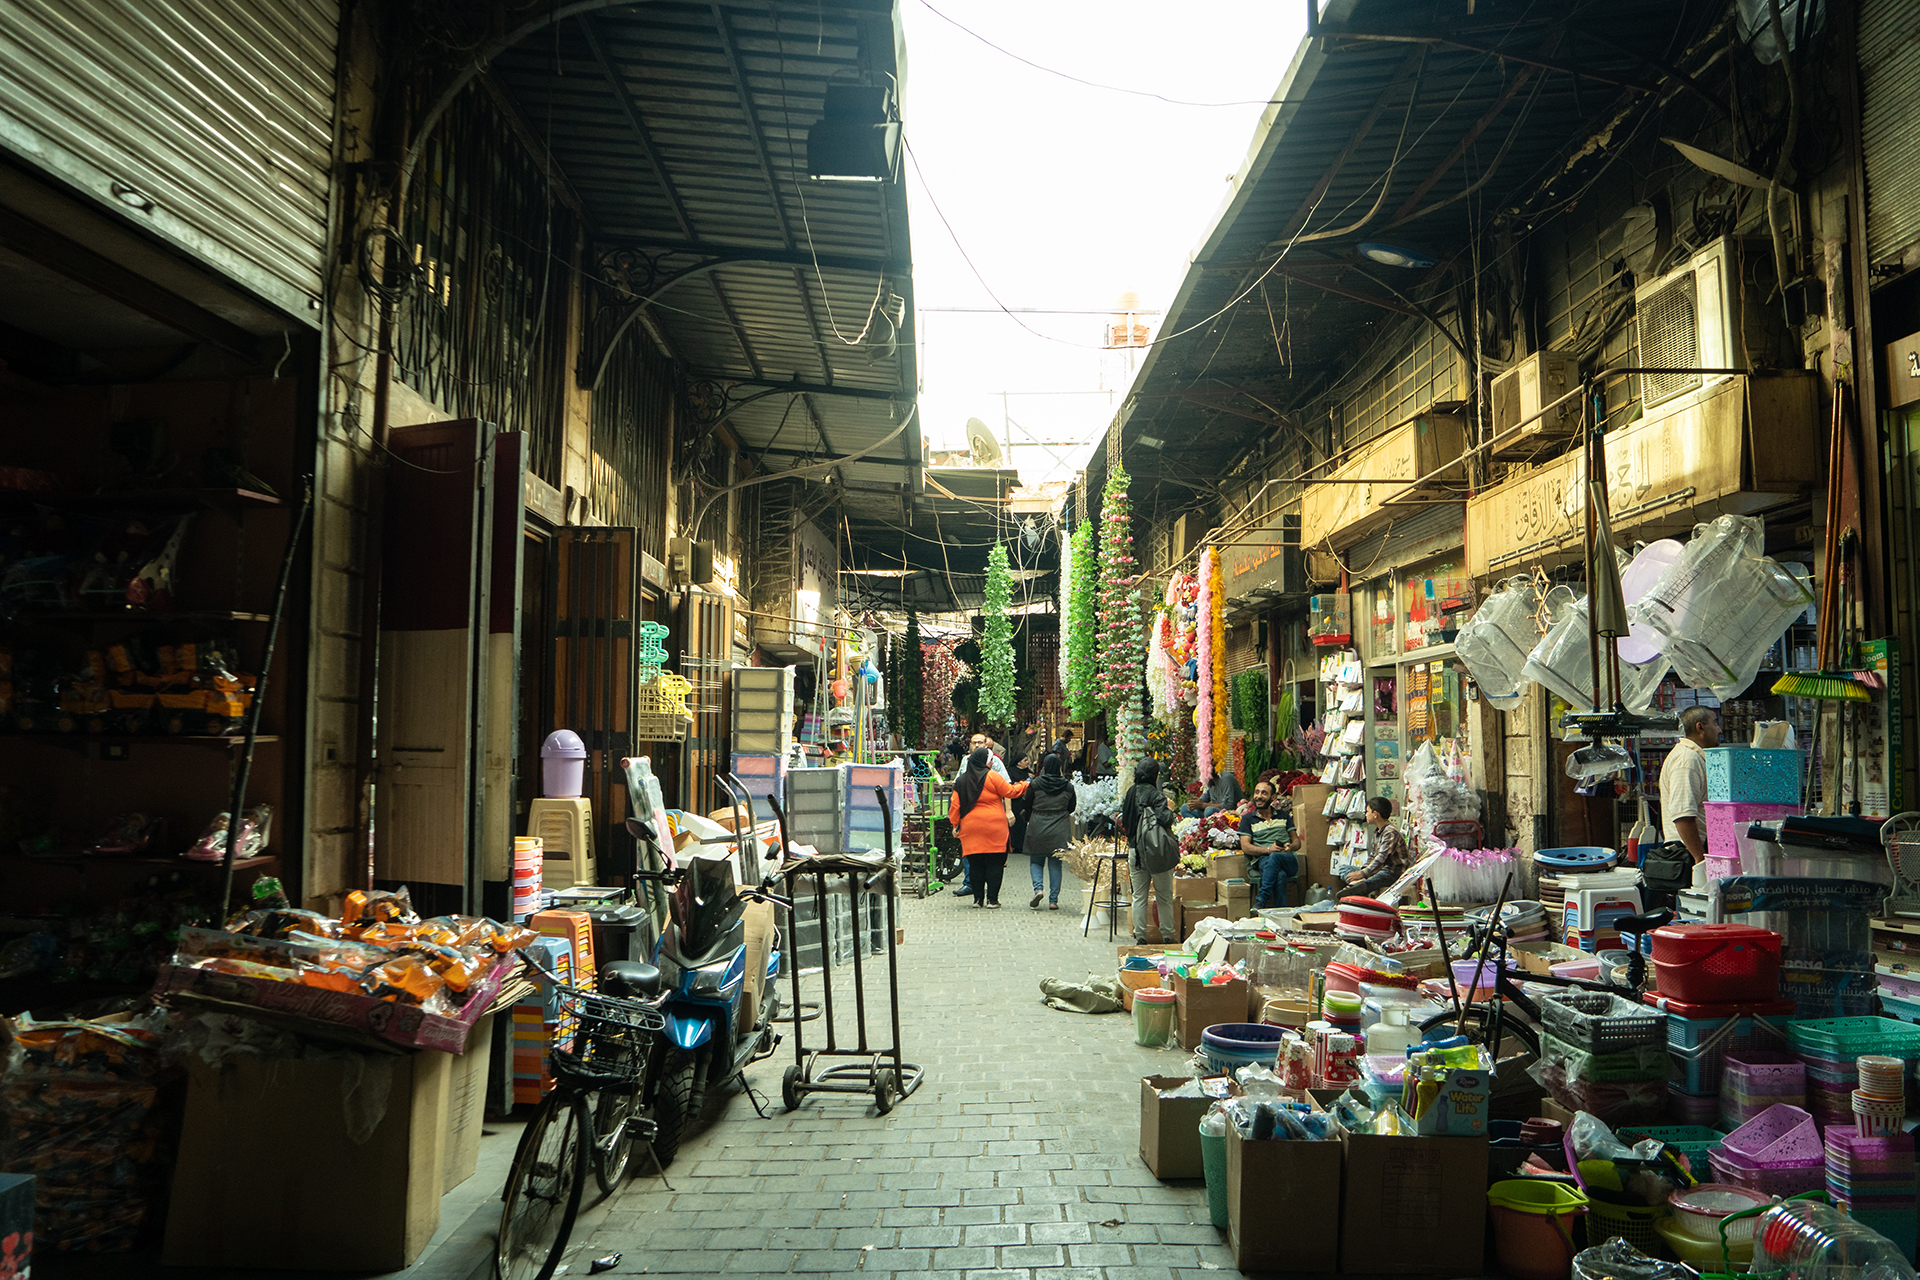 سوق الحميدية في دمشق يعكس أزمة السوريين | اقتصاد – البوكس نيوز